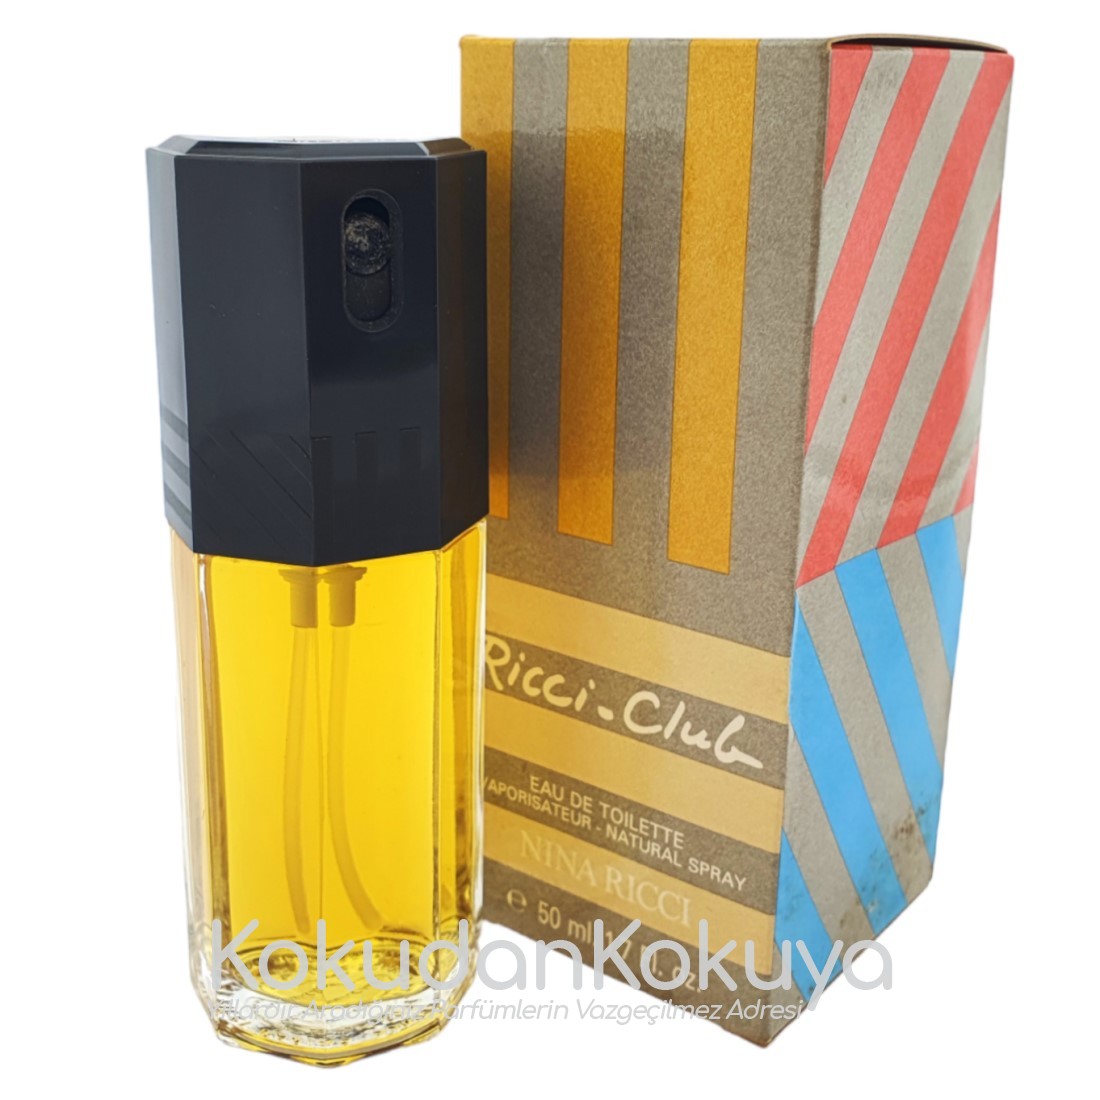 NINA RICCI Ricci Club (Vintage) Parfüm Erkek 50ml Eau De Toilette (EDT) Sprey 